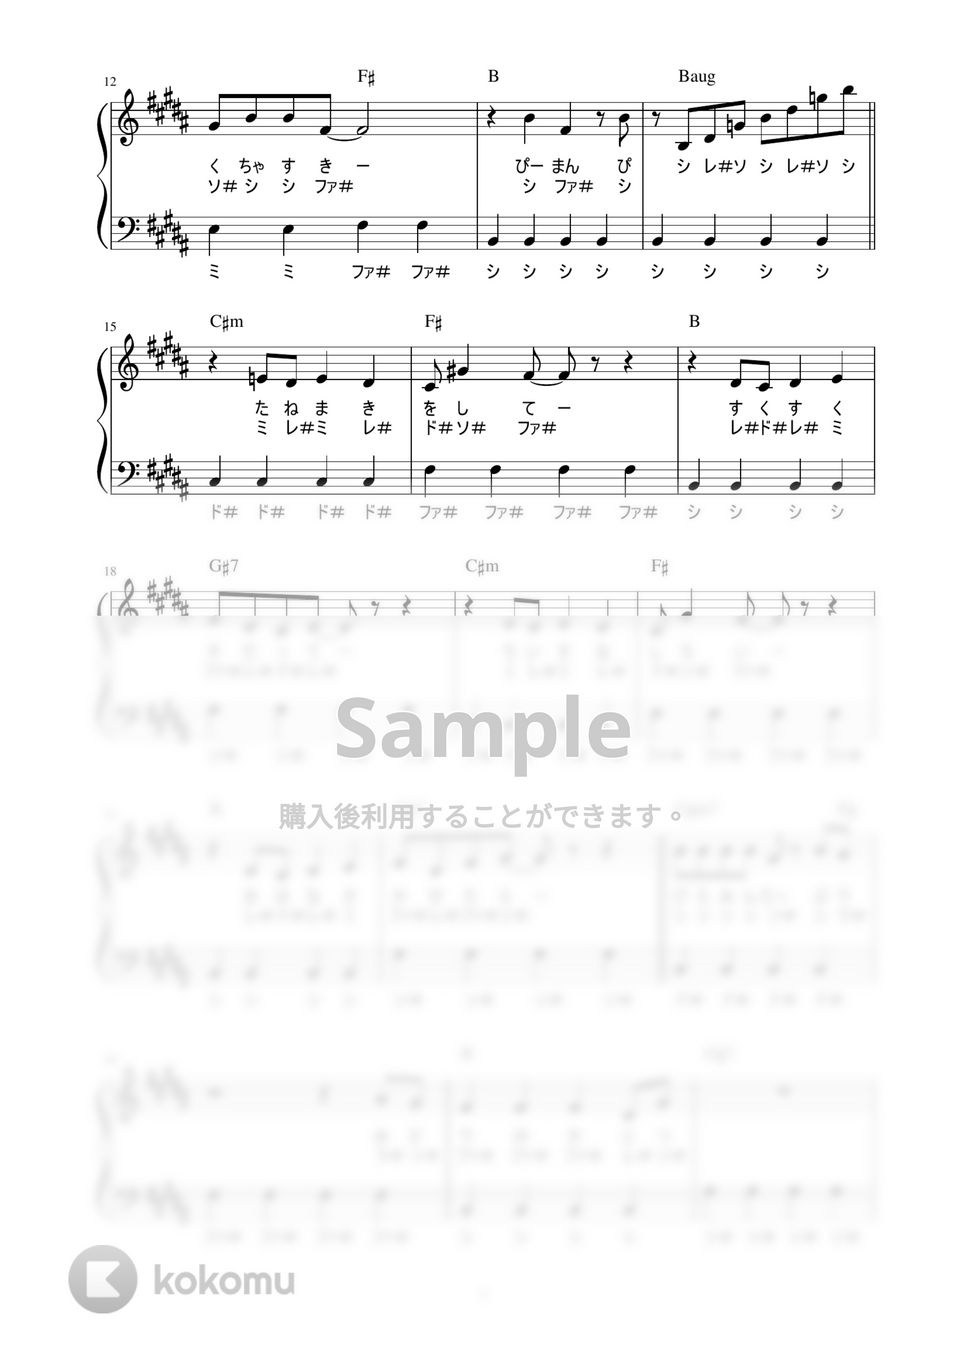 有馬かな - ピーマン体操 (かんたん / 歌詞付き / ドレミ付き / 初心者) by piano.tokyo